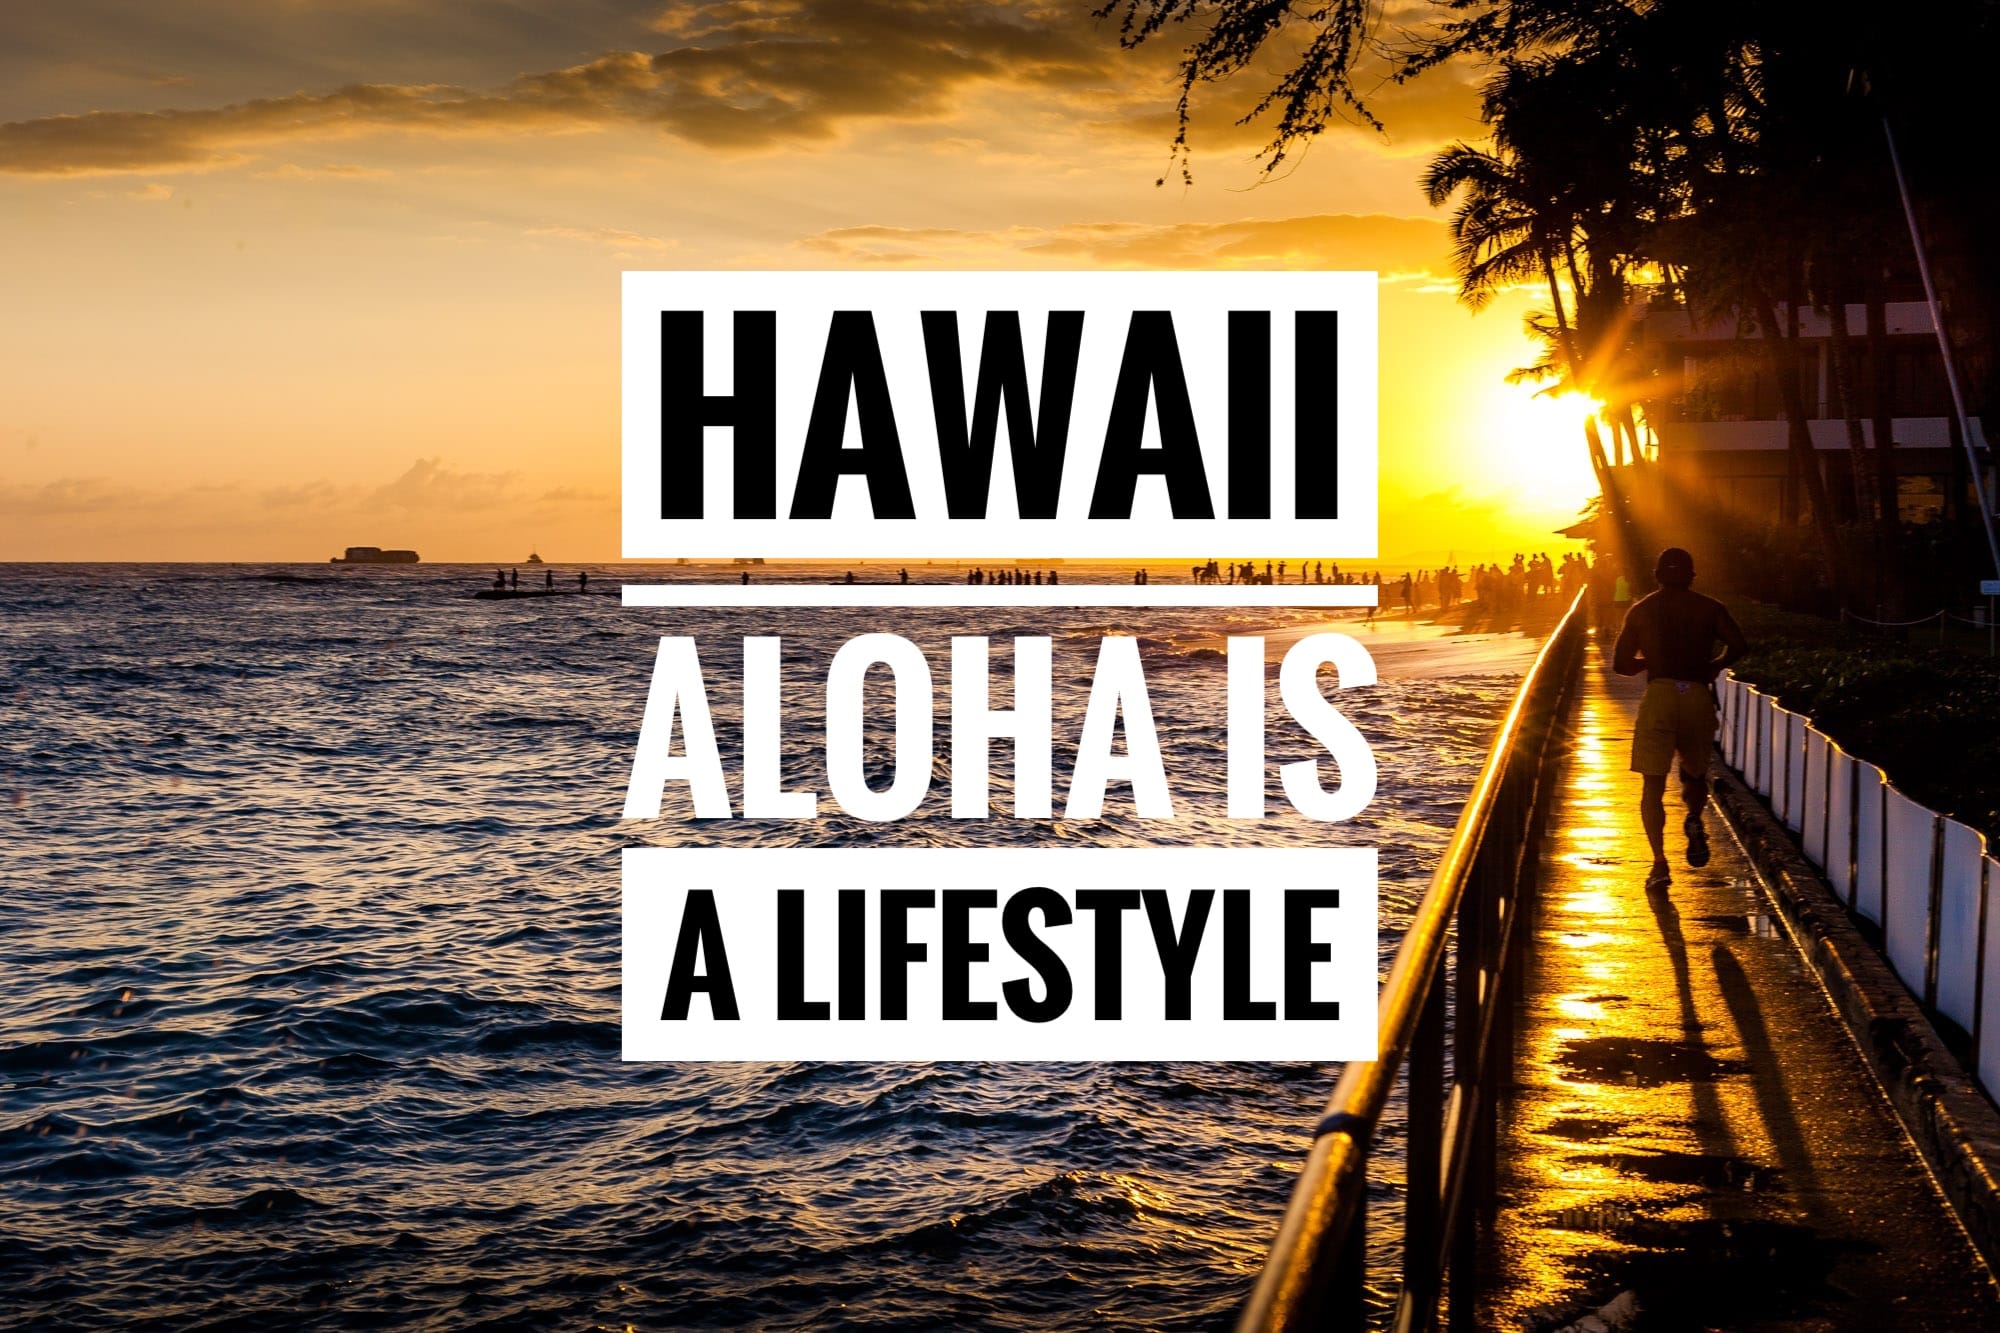 Hawaii – Aloha is a Lifestyle